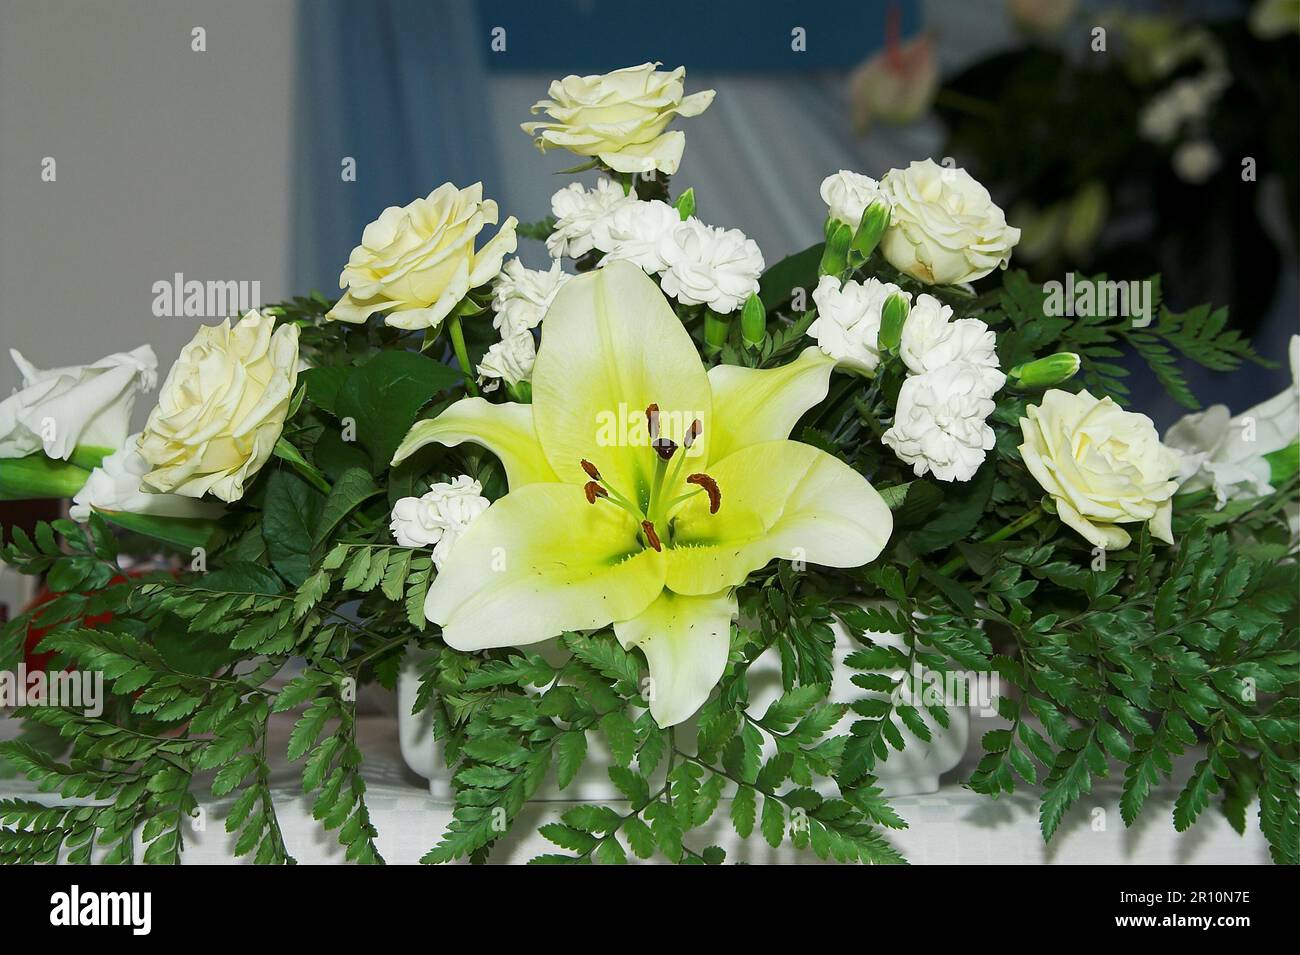 Polonia, Polen, Polska; disposizione dei fiori sul tavolo (rosa e giglio); Blumenarrangiation auf dem Tisch (Rose und Lilie) Foto Stock